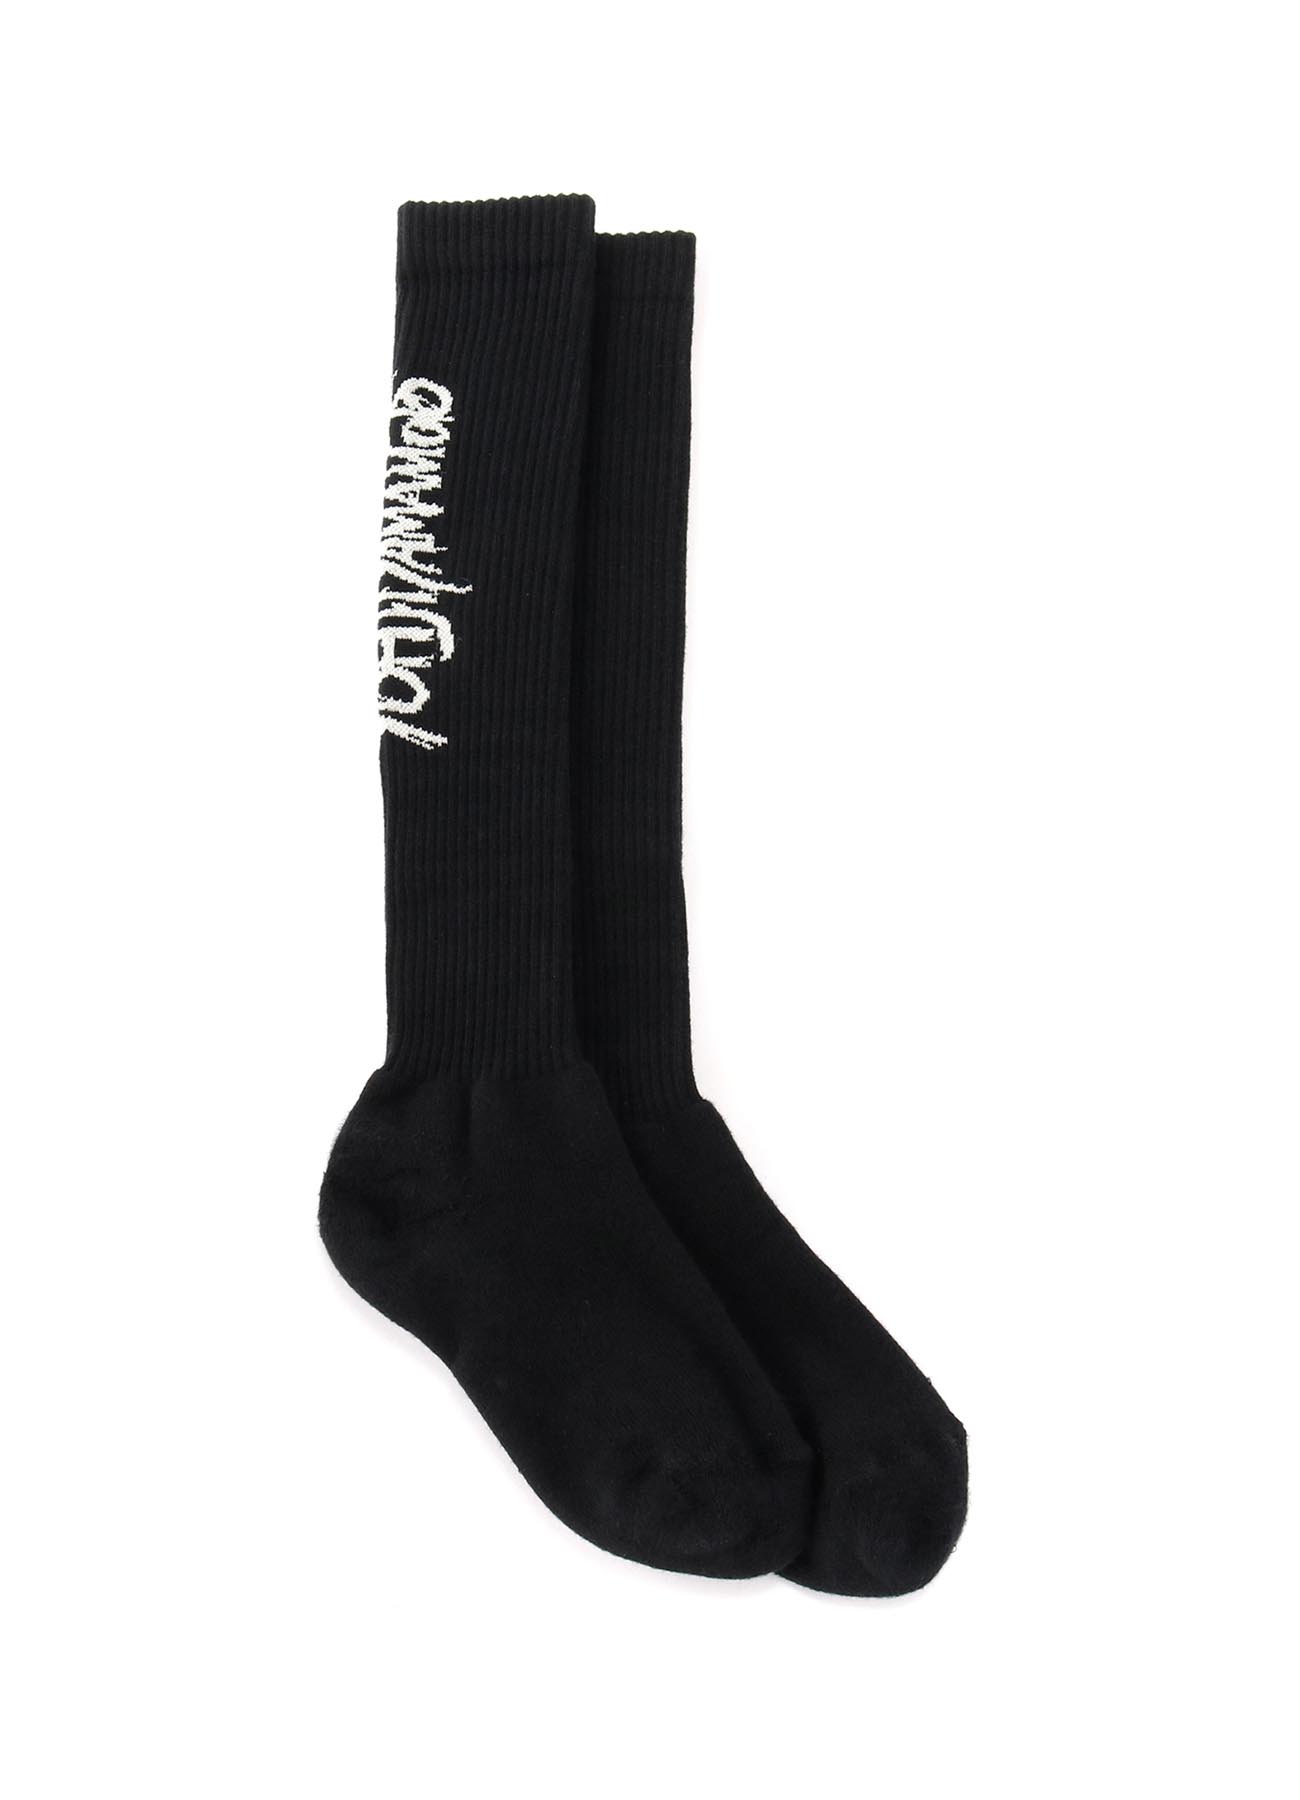 Rib High Socks Yohji Yamamoto Logo